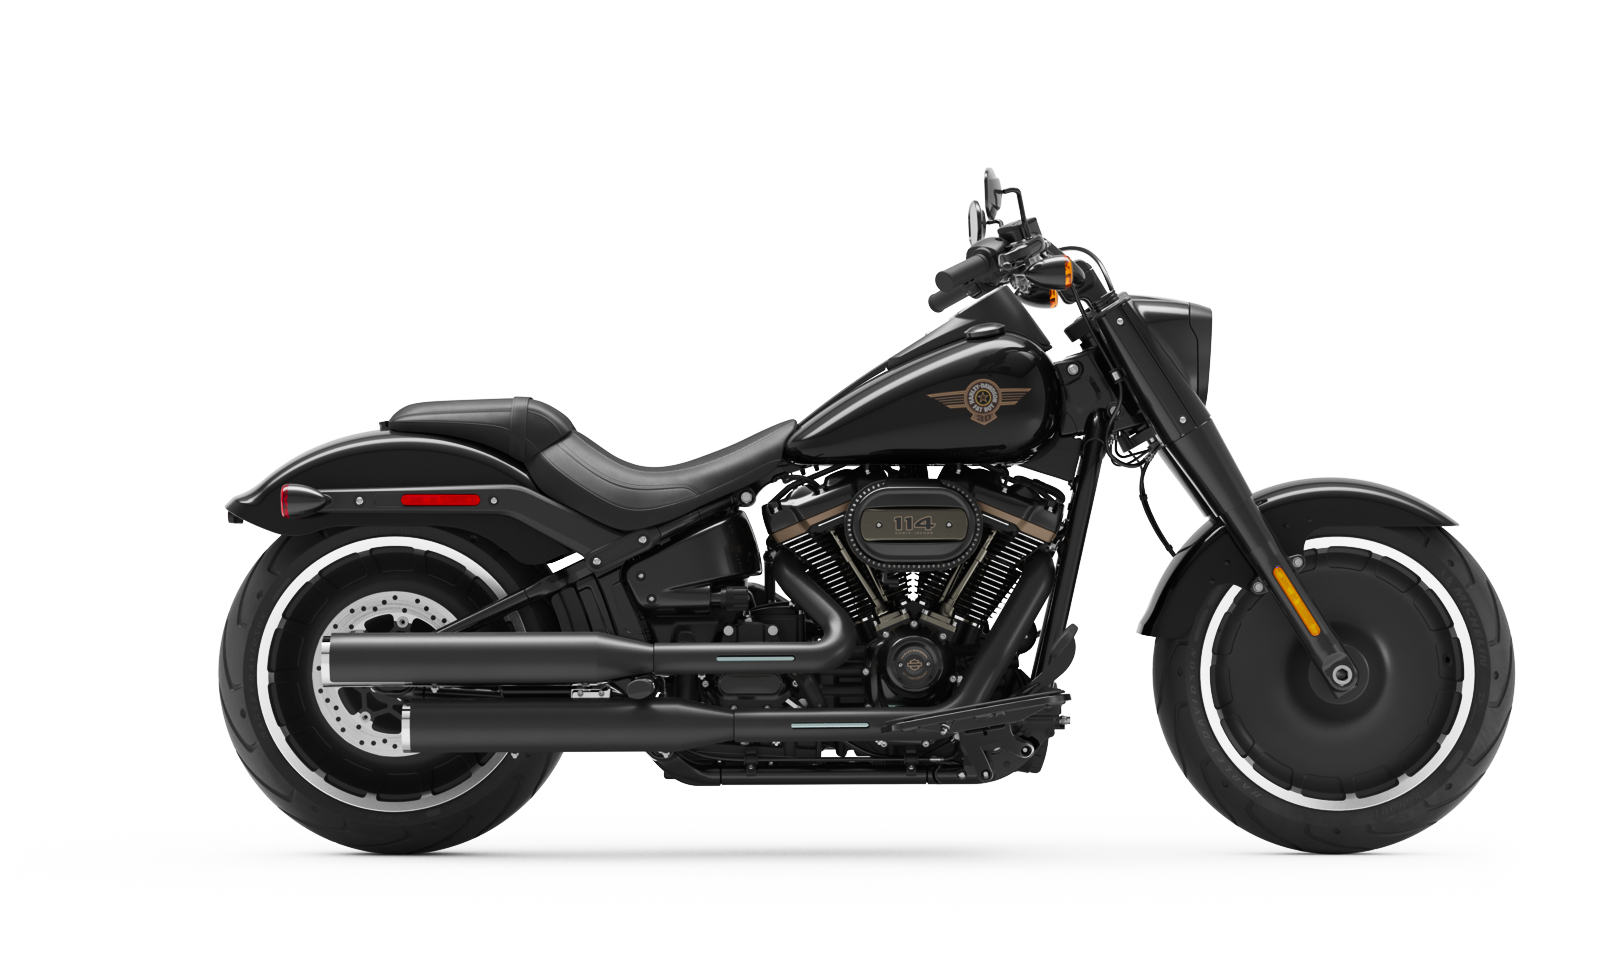 Harley Davidson Fatboy 114 For Sale Online